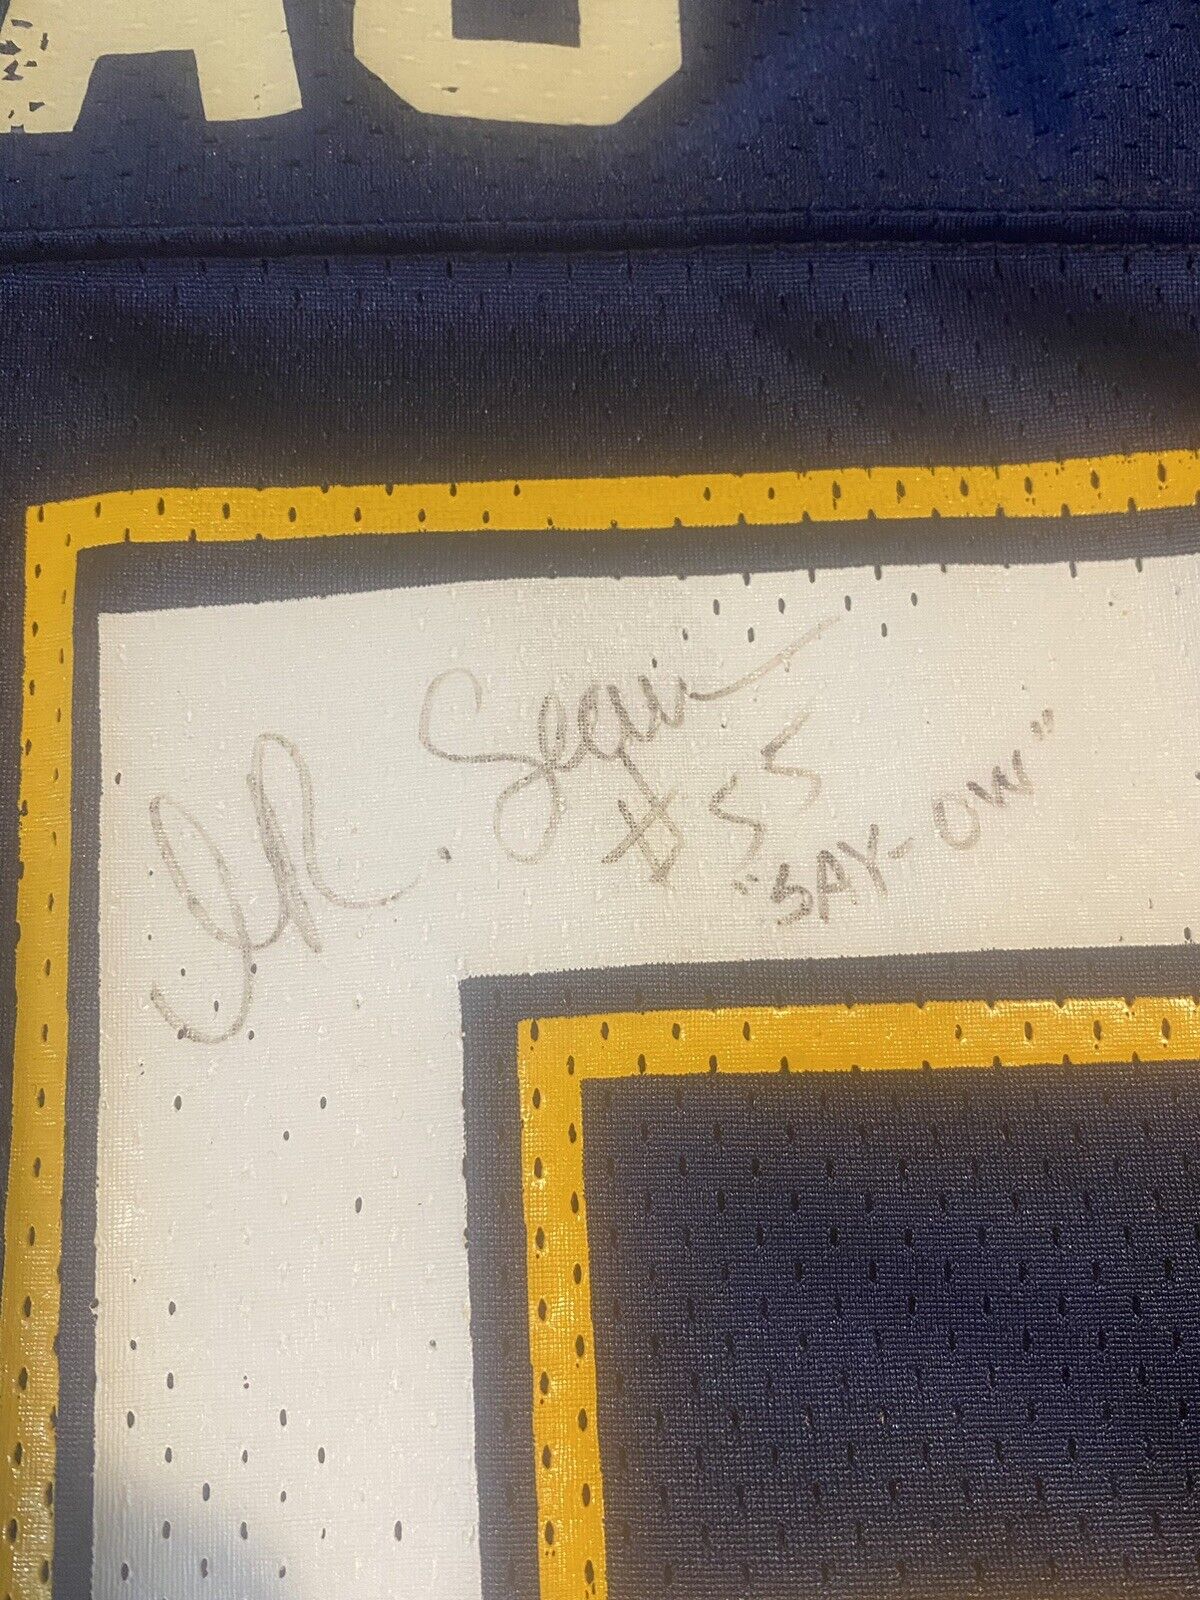 junior seau autographed jersey